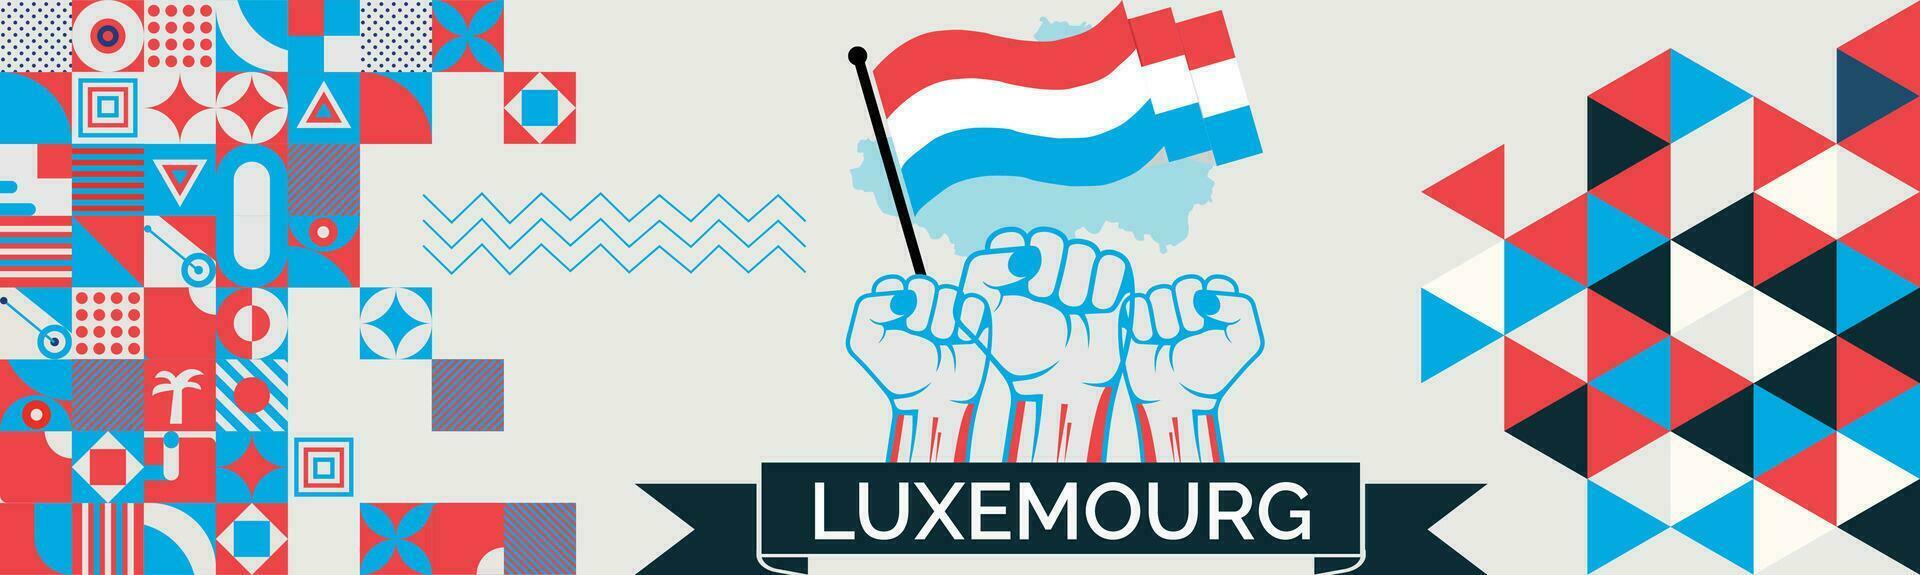 lussemburgo carta geografica e sollevato pugni. nazionale giorno o indipendenza giorno design per lussemburgo celebrazione. moderno retrò design con astratto icone. vettore illustrazione.